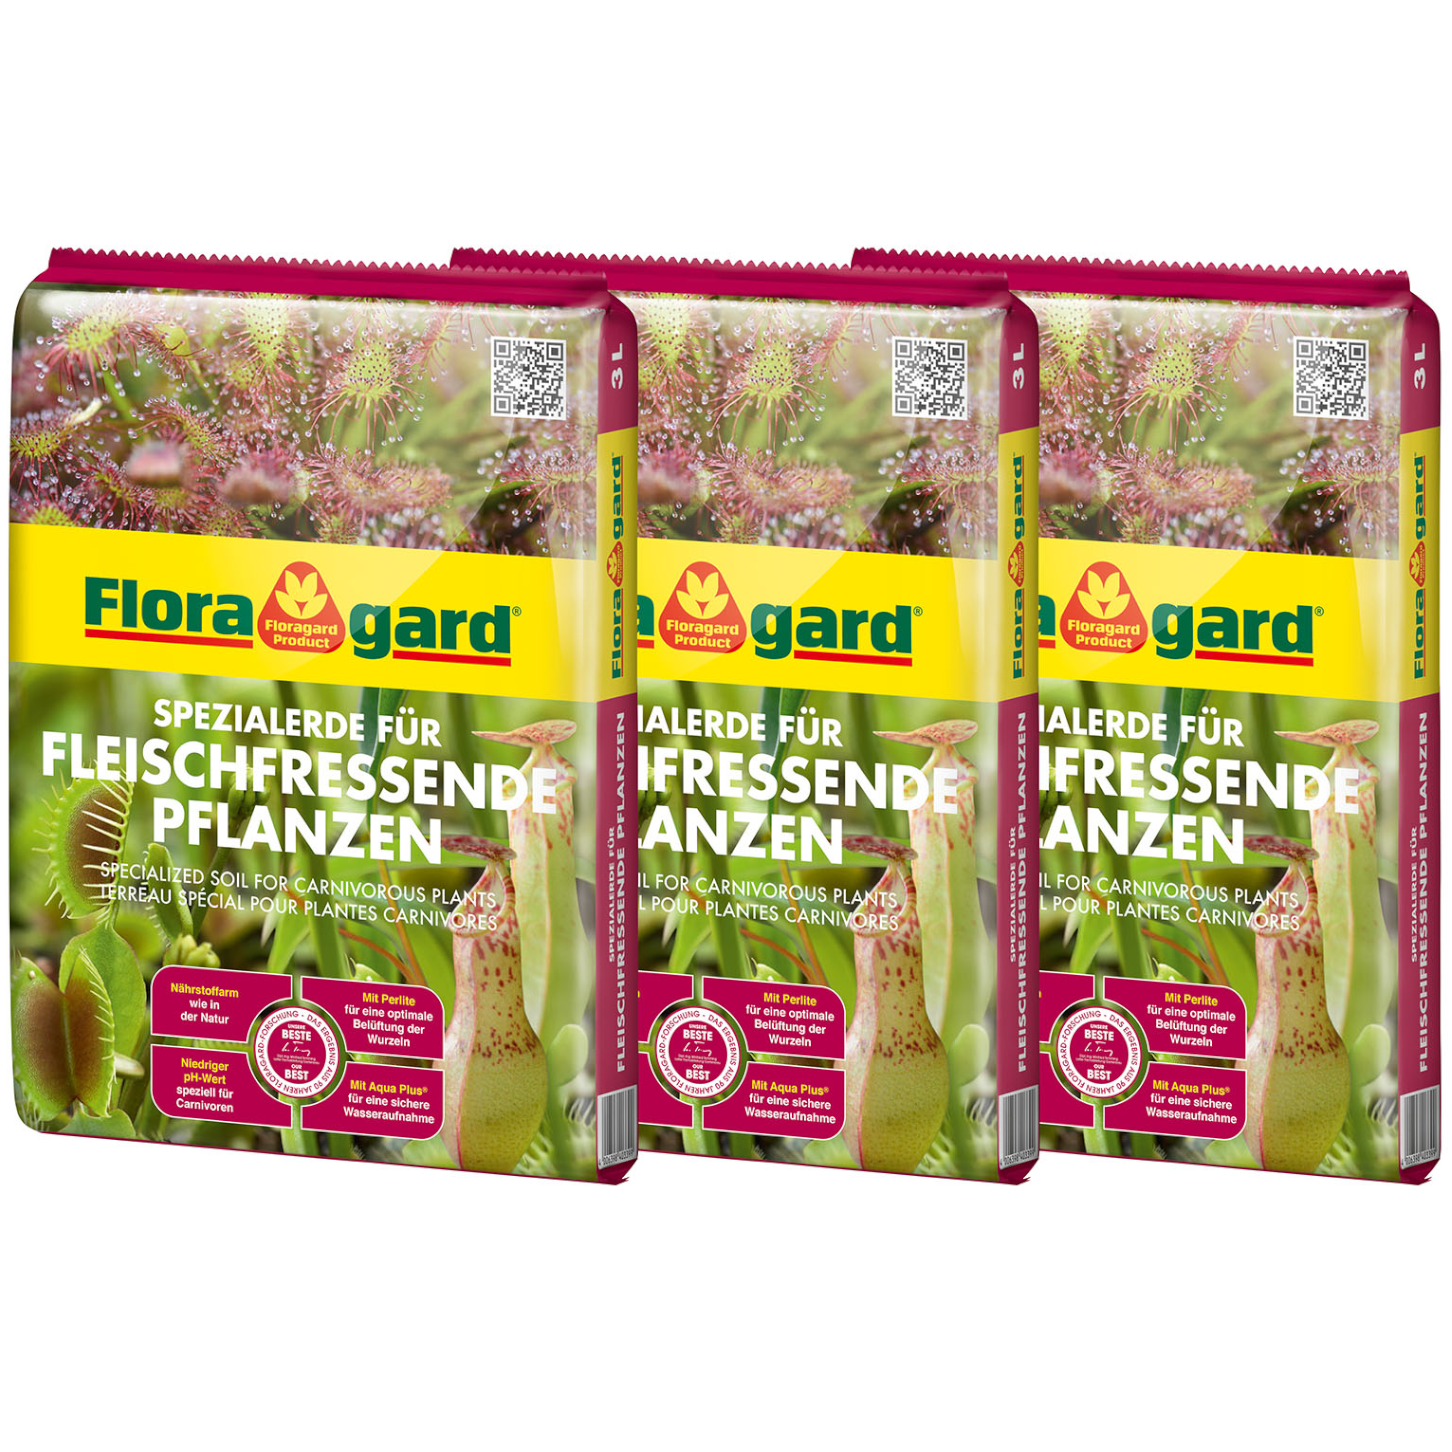 Floragard Spezialerde für fleischfressende Pflanzen 3x3L